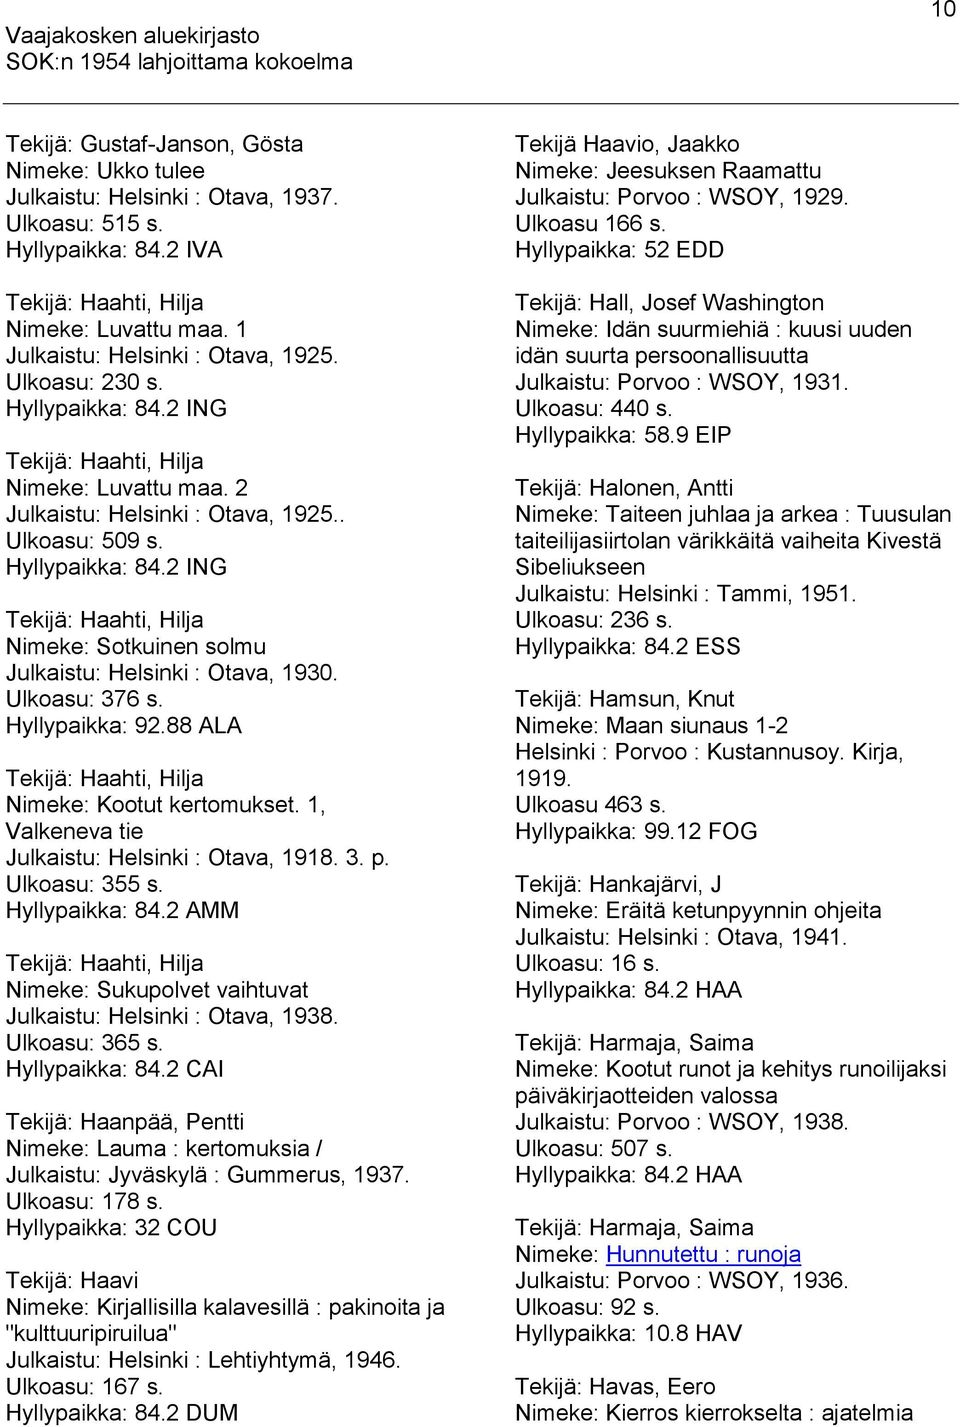 Ulkoasu: 376 s. Hyllypaikka: 92.88 ALA Tekijä: Haahti, Hilja Nimeke: Kootut kertomukset. 1, Valkeneva tie Julkaistu: Helsinki : Otava, 1918. 3. p. Ulkoasu: 355 s. Hyllypaikka: 84.